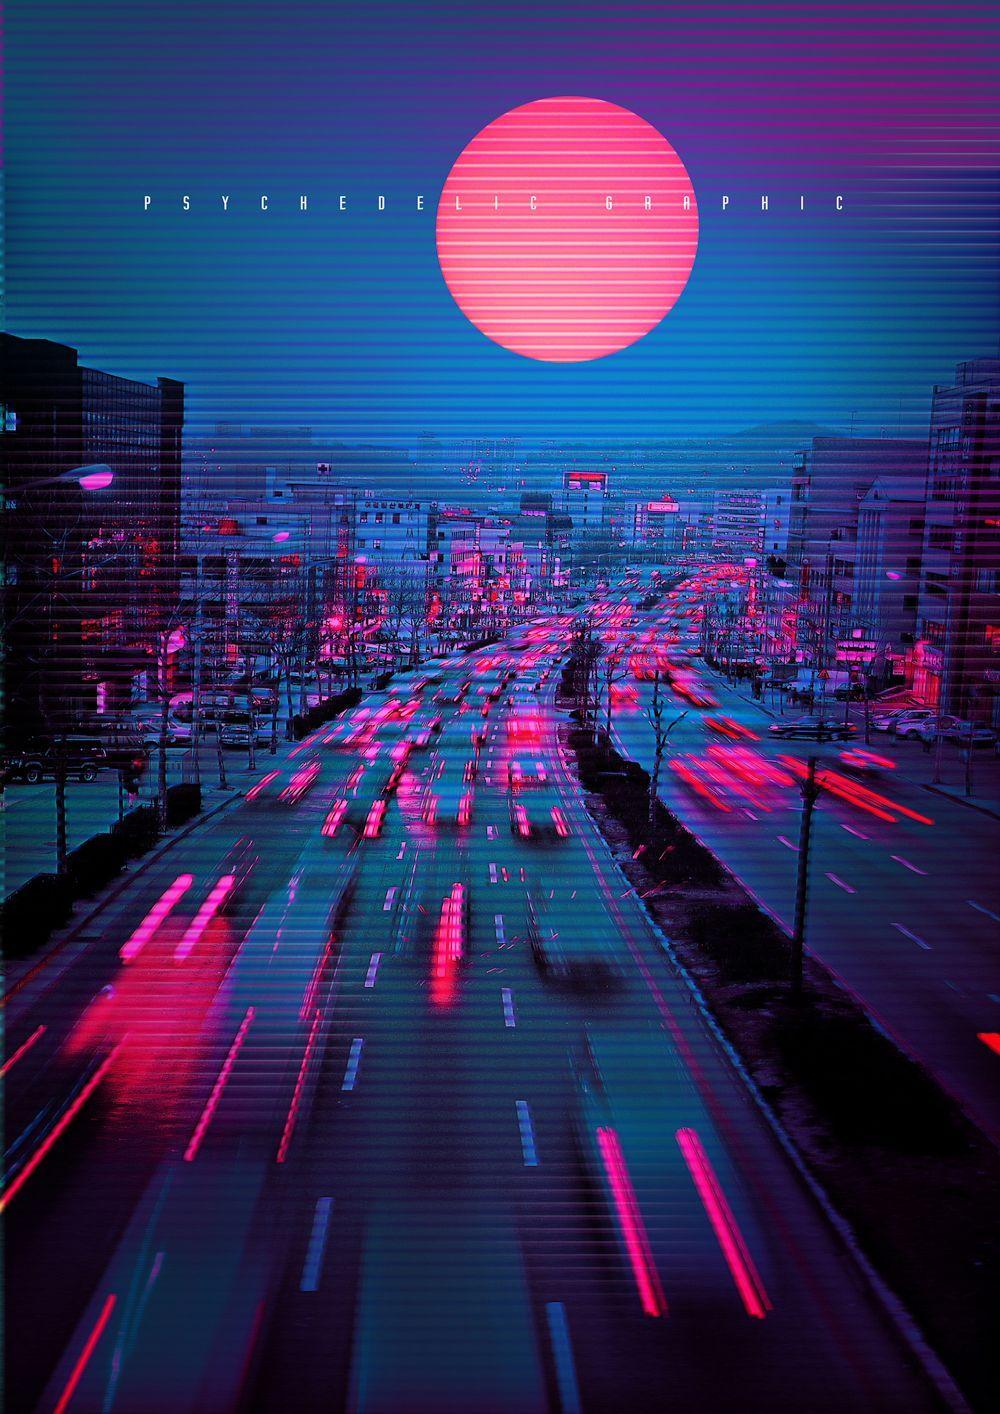 Neon City Vaporwave Wallpapers - Top Free Neon City Vaporwave